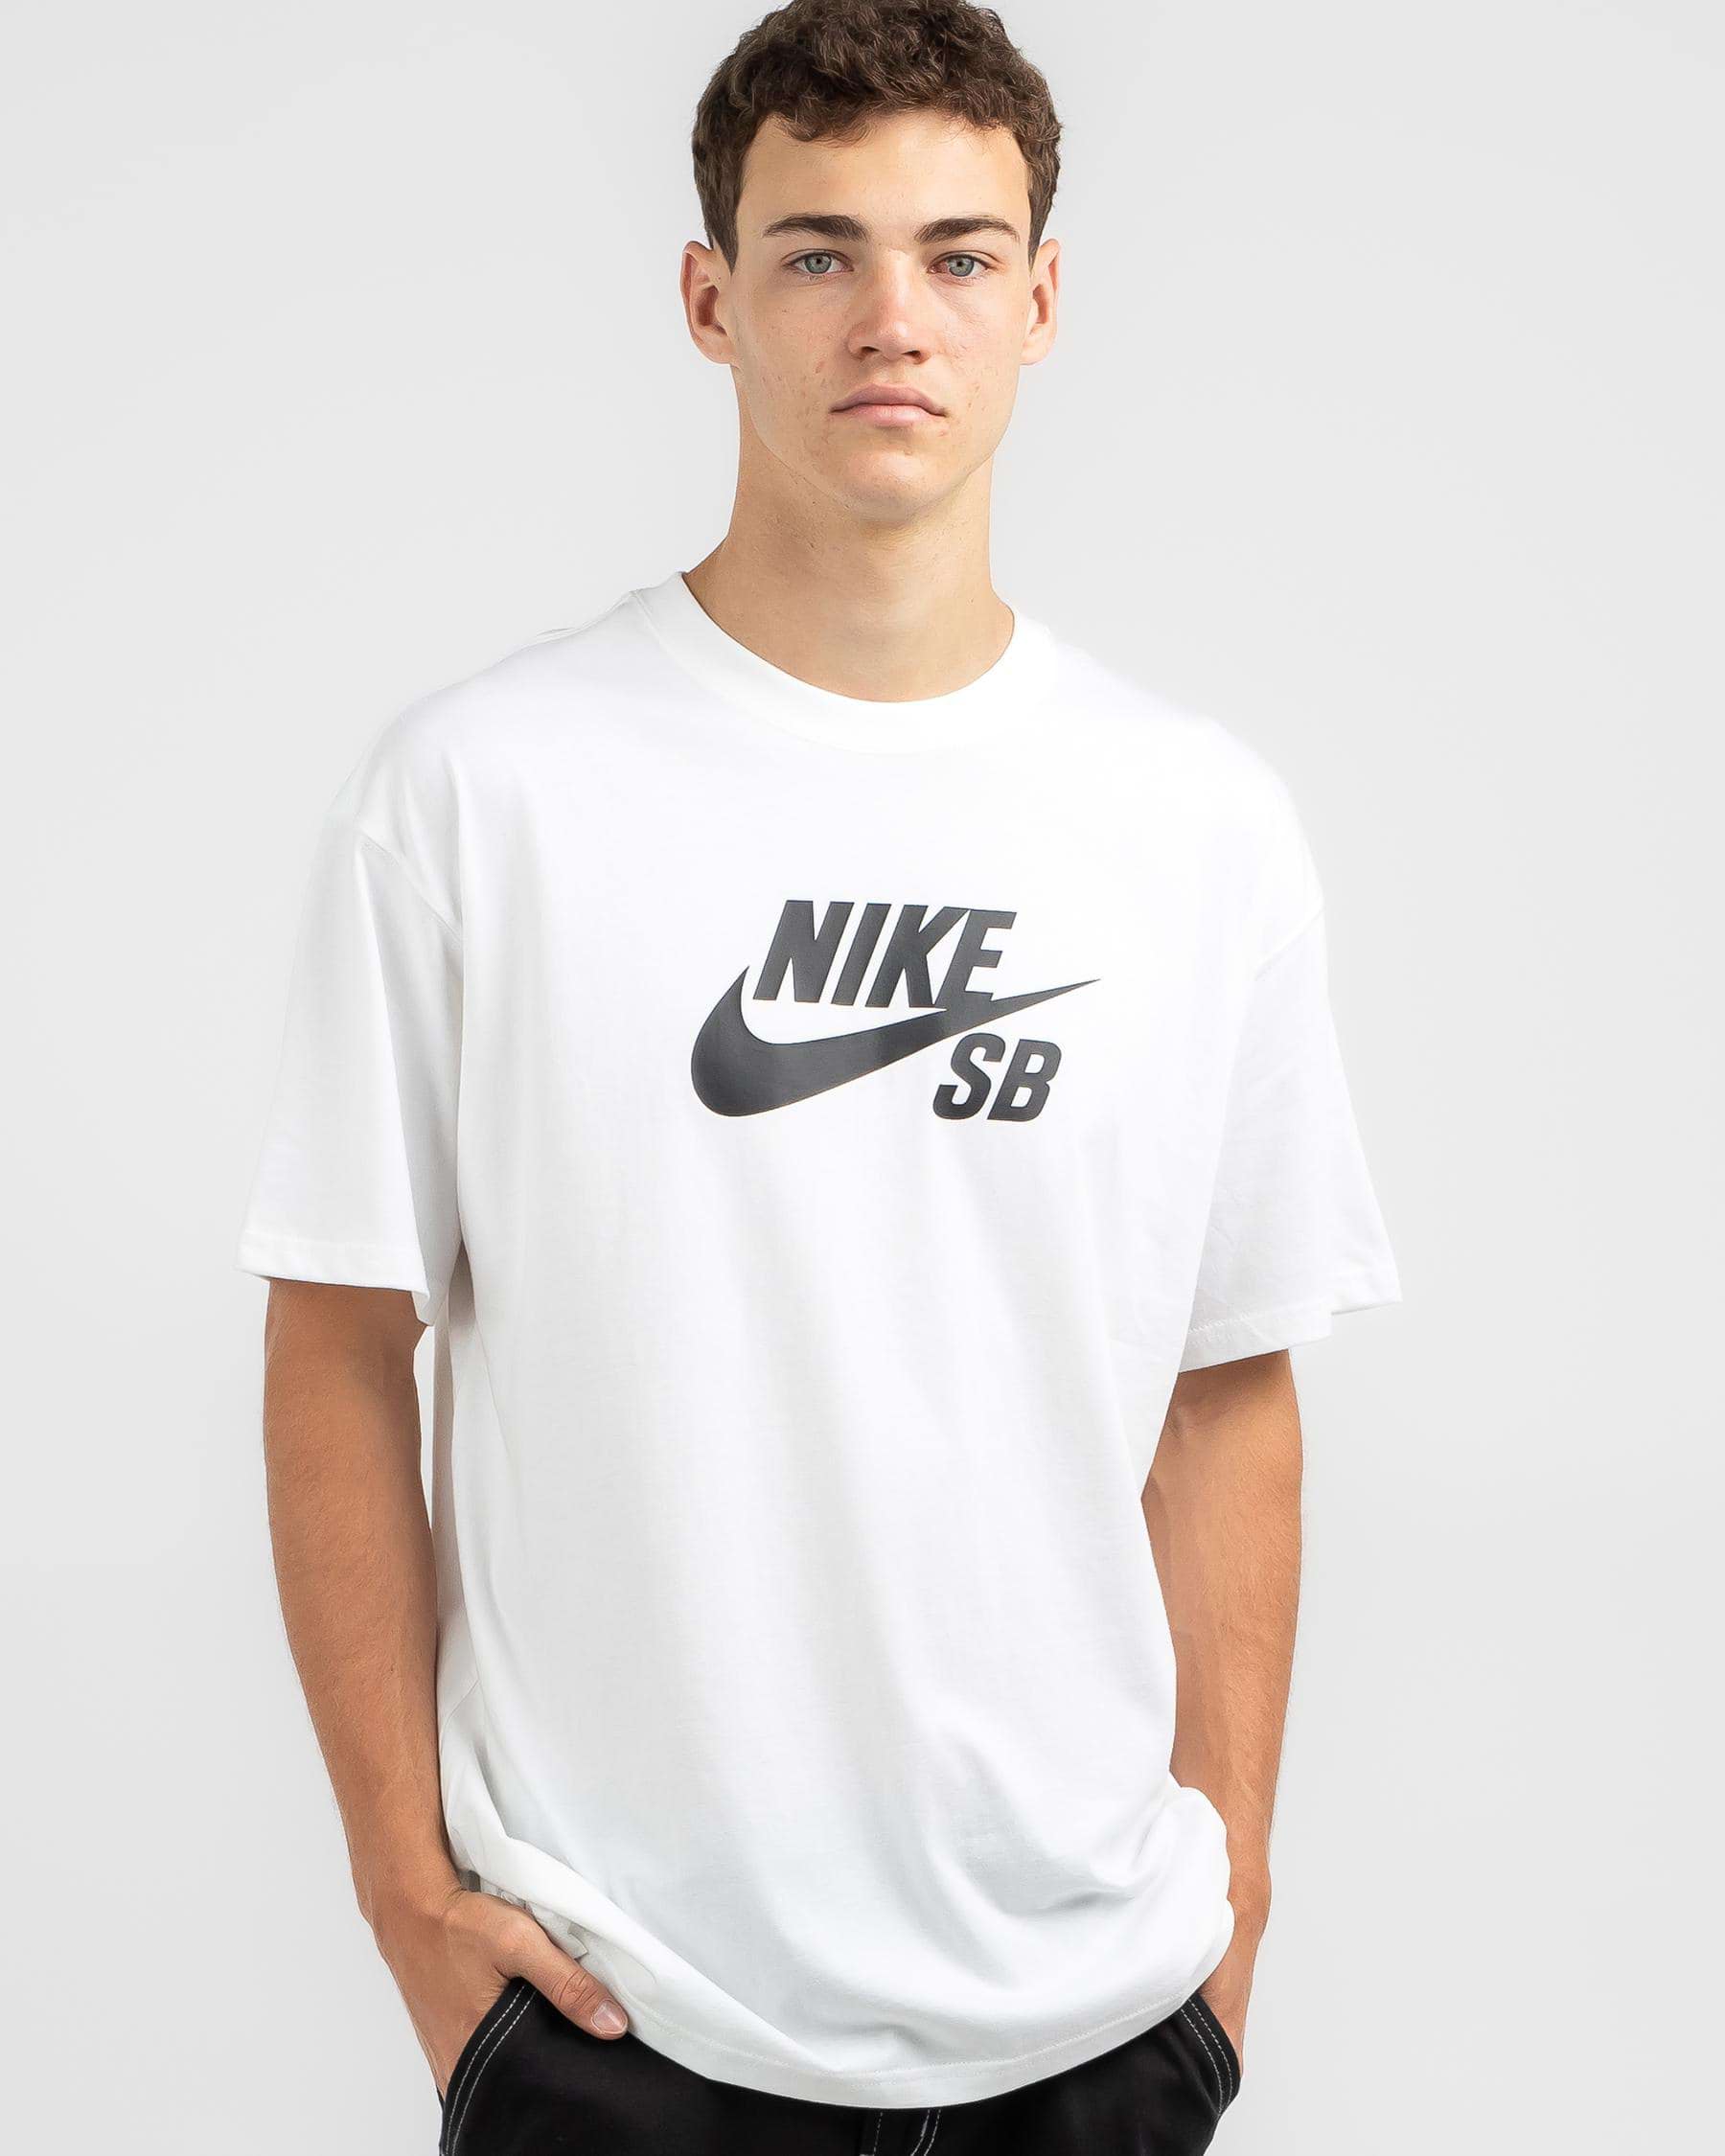 Nike SB Tee Logo - White